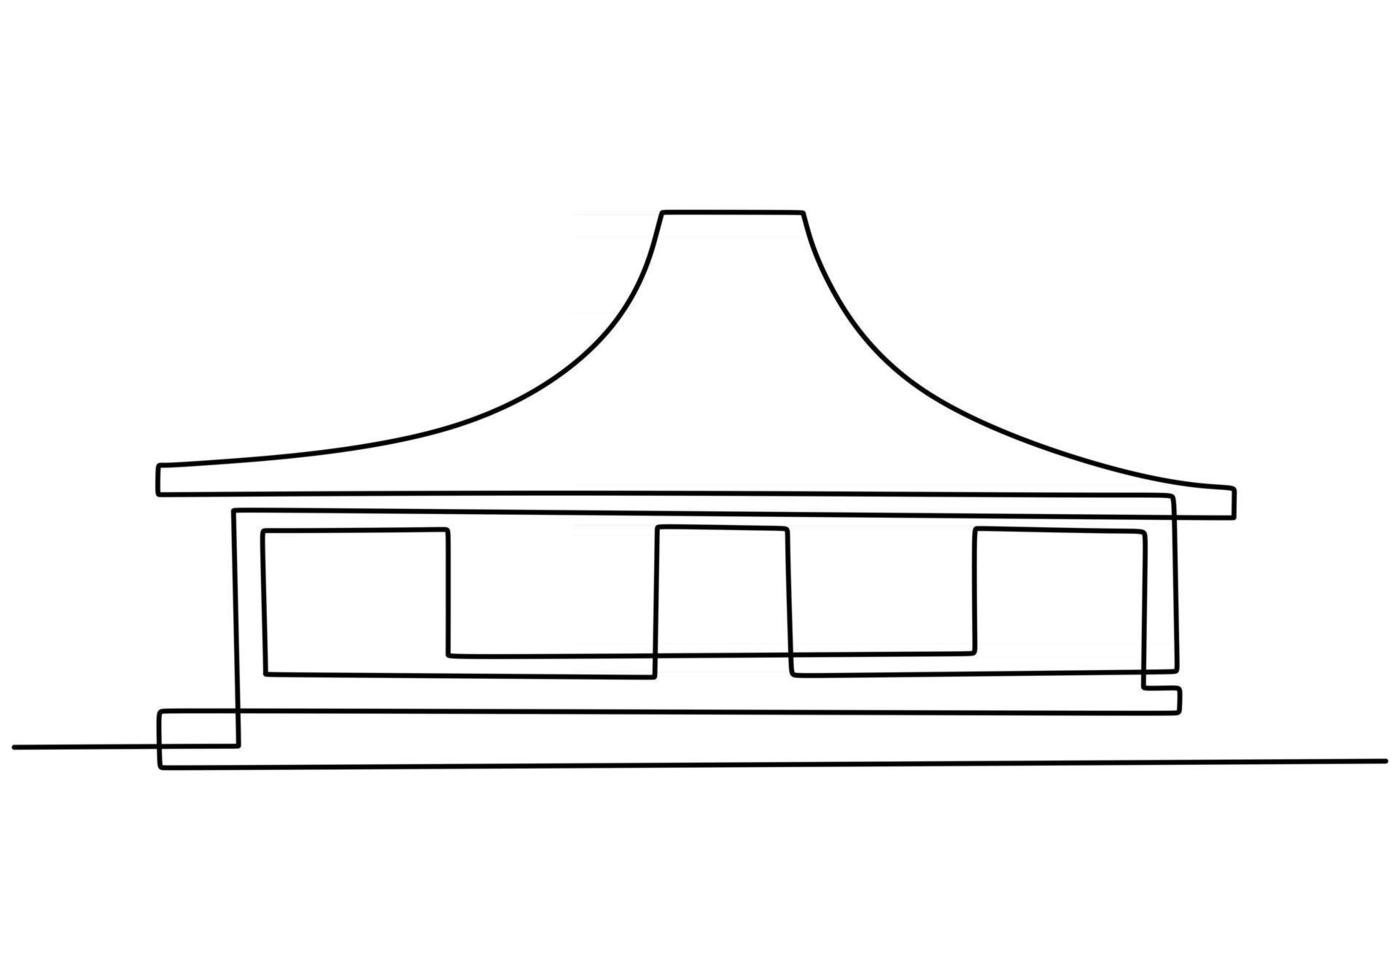 durchgehend eine Linie des traditionellen javanischen Gebäudes. klassisches Haus in einer einzigen Zeile auf weißem Hintergrund. vektor